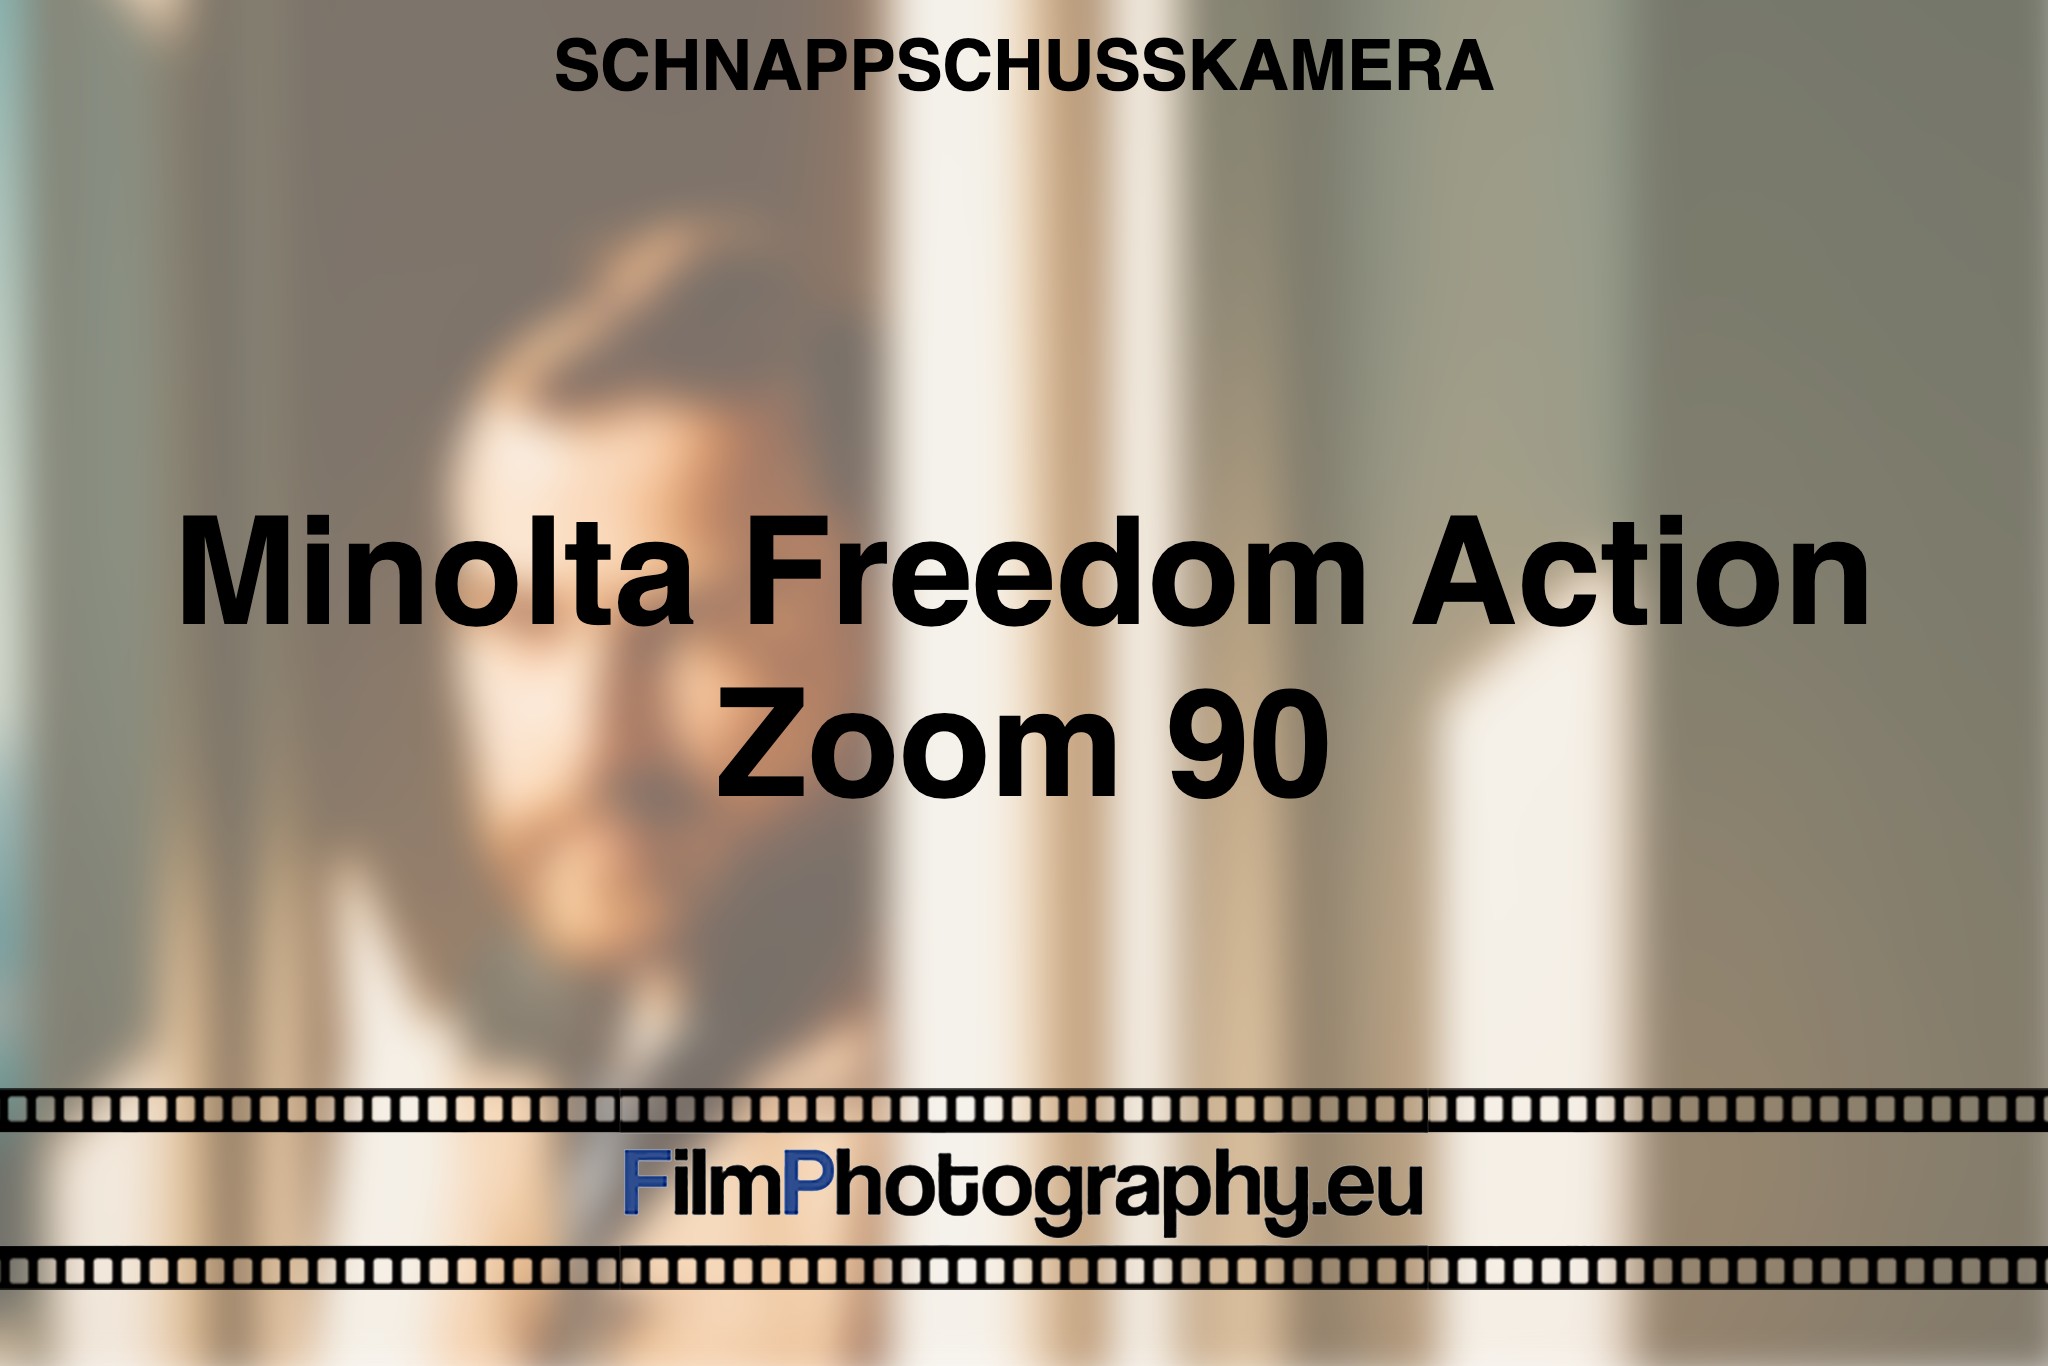 minolta-freedom-action-zoom-90-schnappschusskamera-bnv